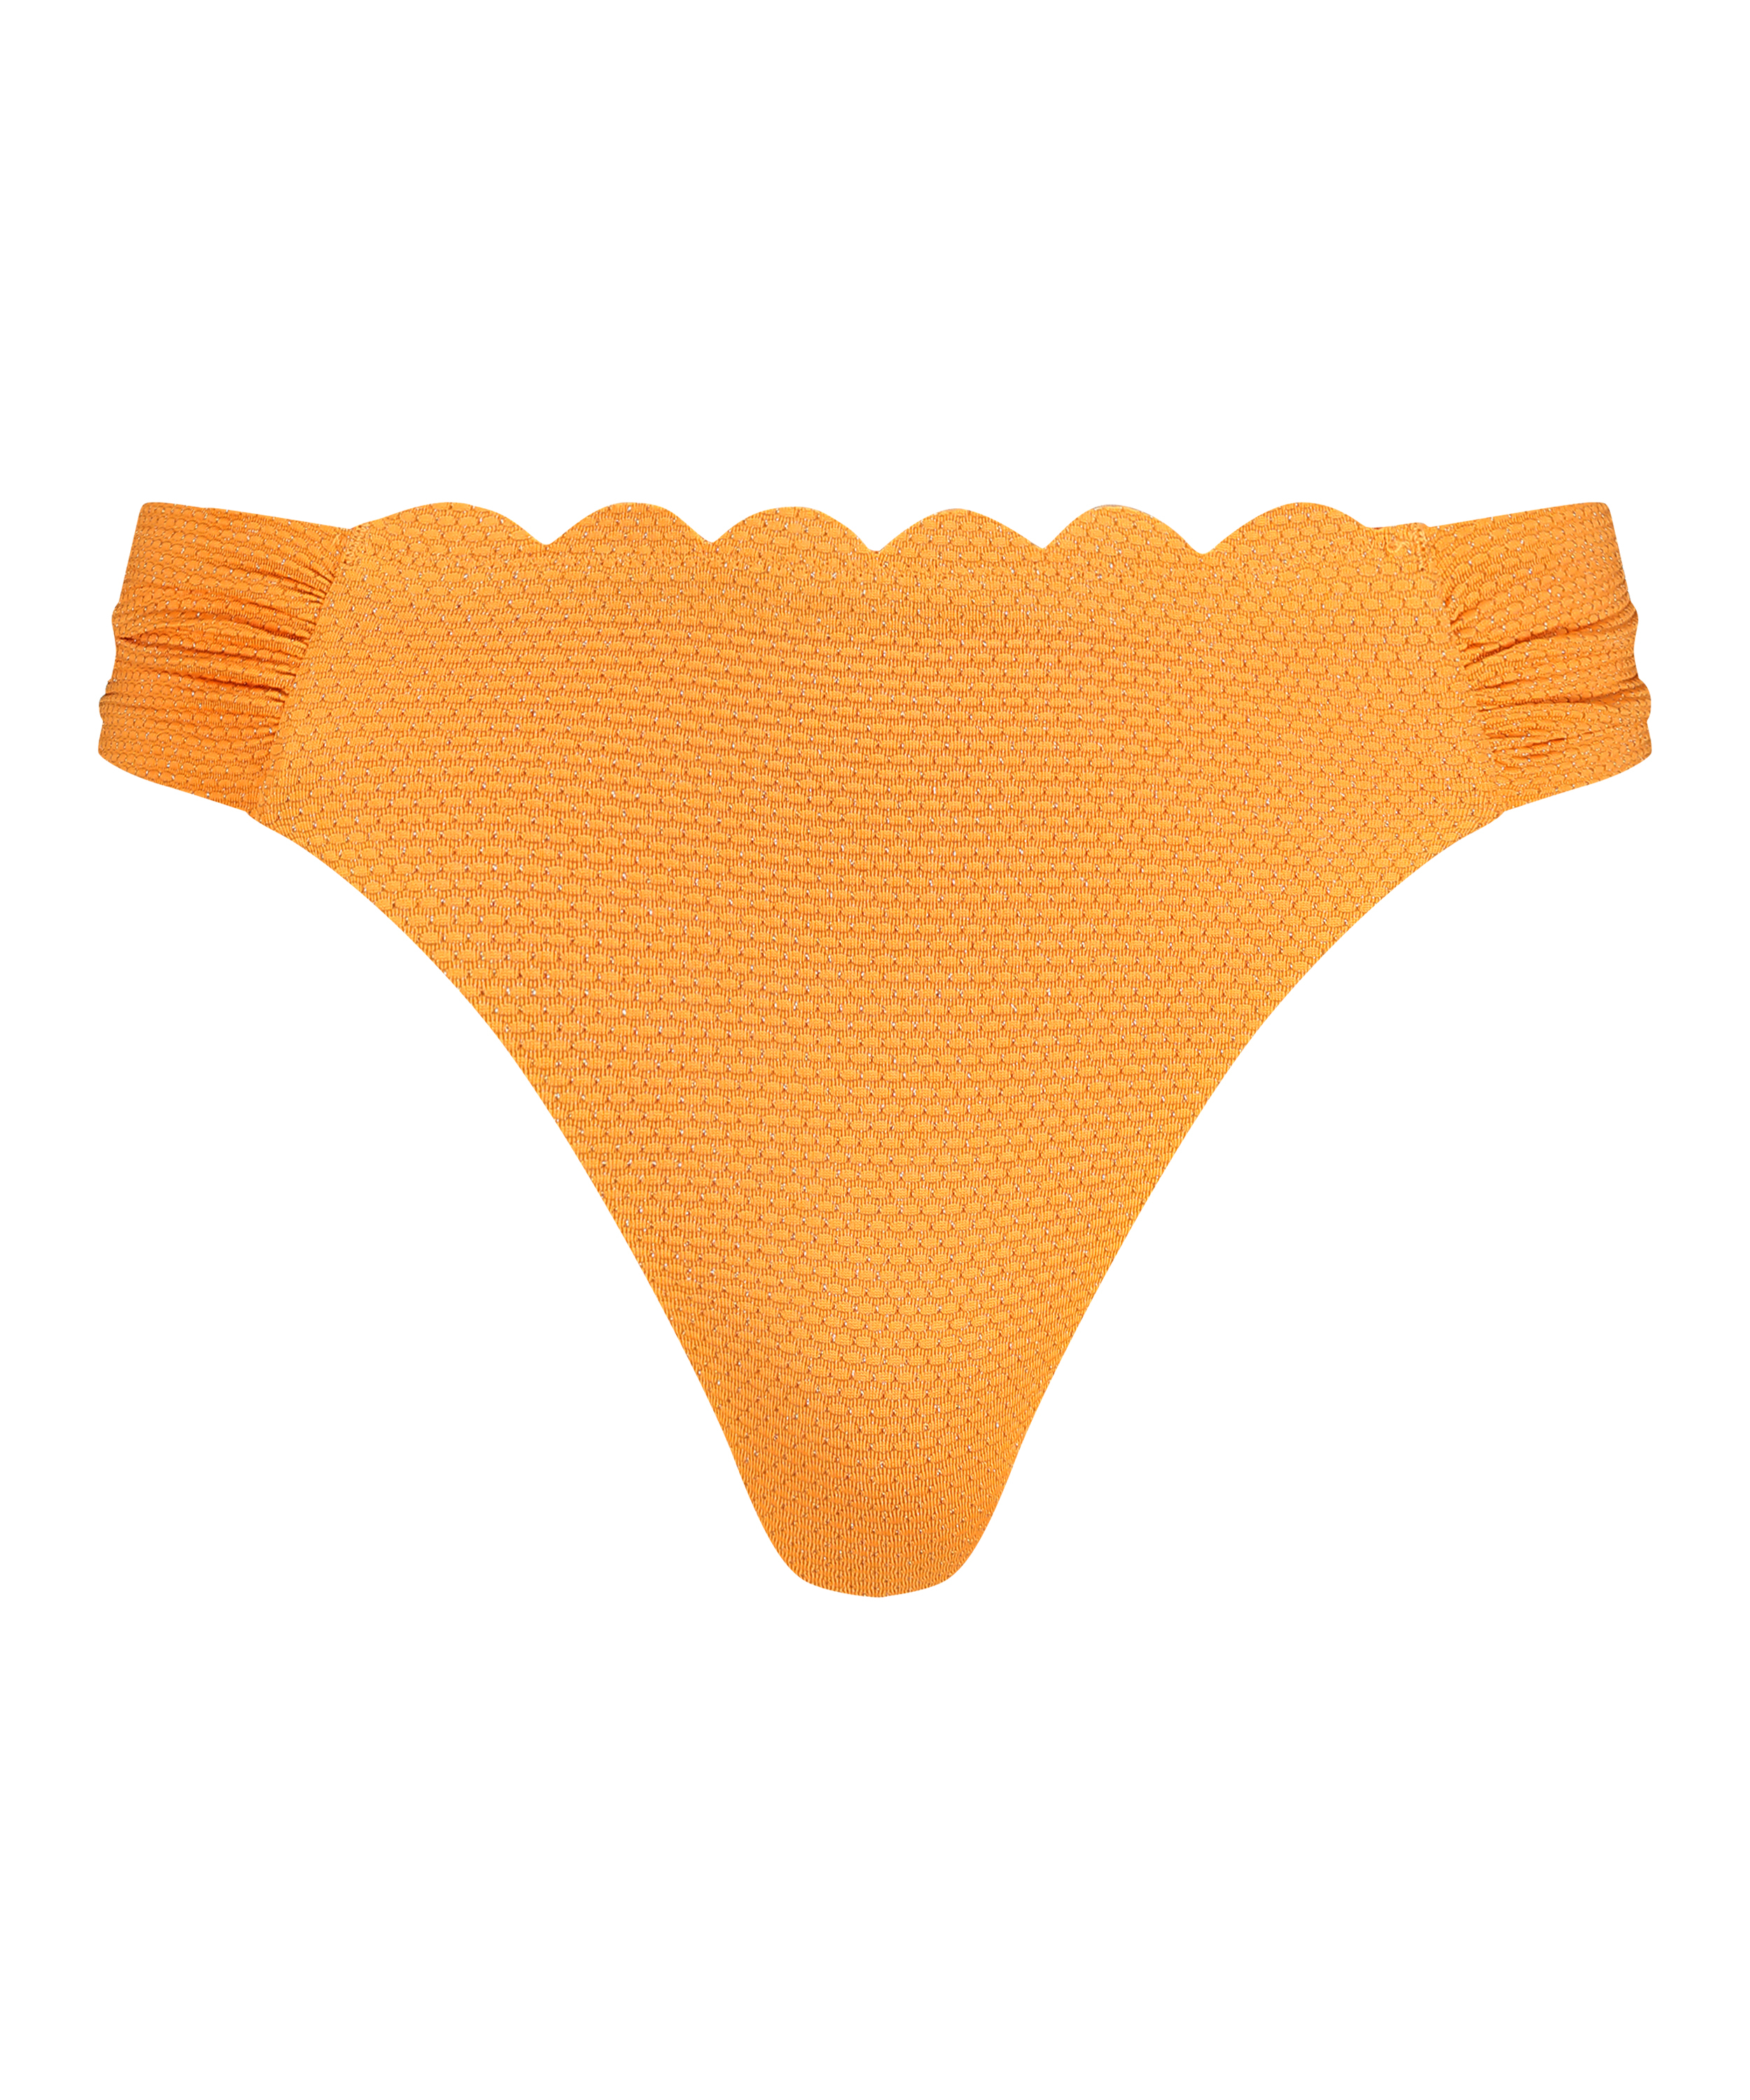 Majtki Bikini Rio Scallop Lurex, Pomarańczowy, main